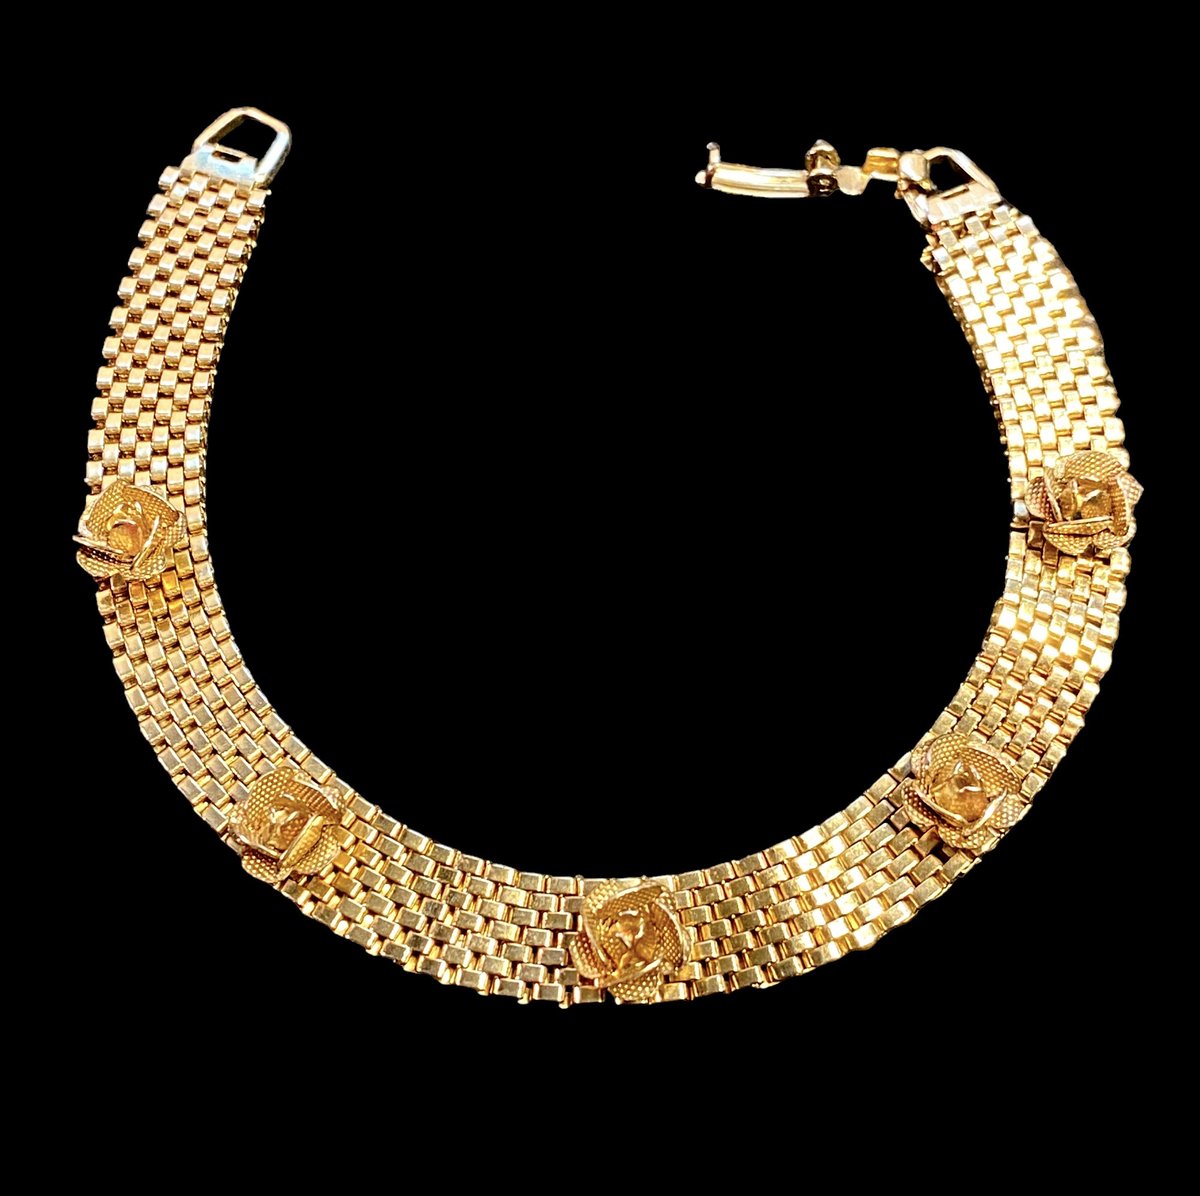 Vintage Gold Tone Mesh Bracelet with Flower Rose Buds  #FestiveEtsyFinds #gold #mesh #rosebud #flower #bracelet #vintage #Fashion #Jewelry #Gifts etsy.me/3M8I3gC via
@Etsy